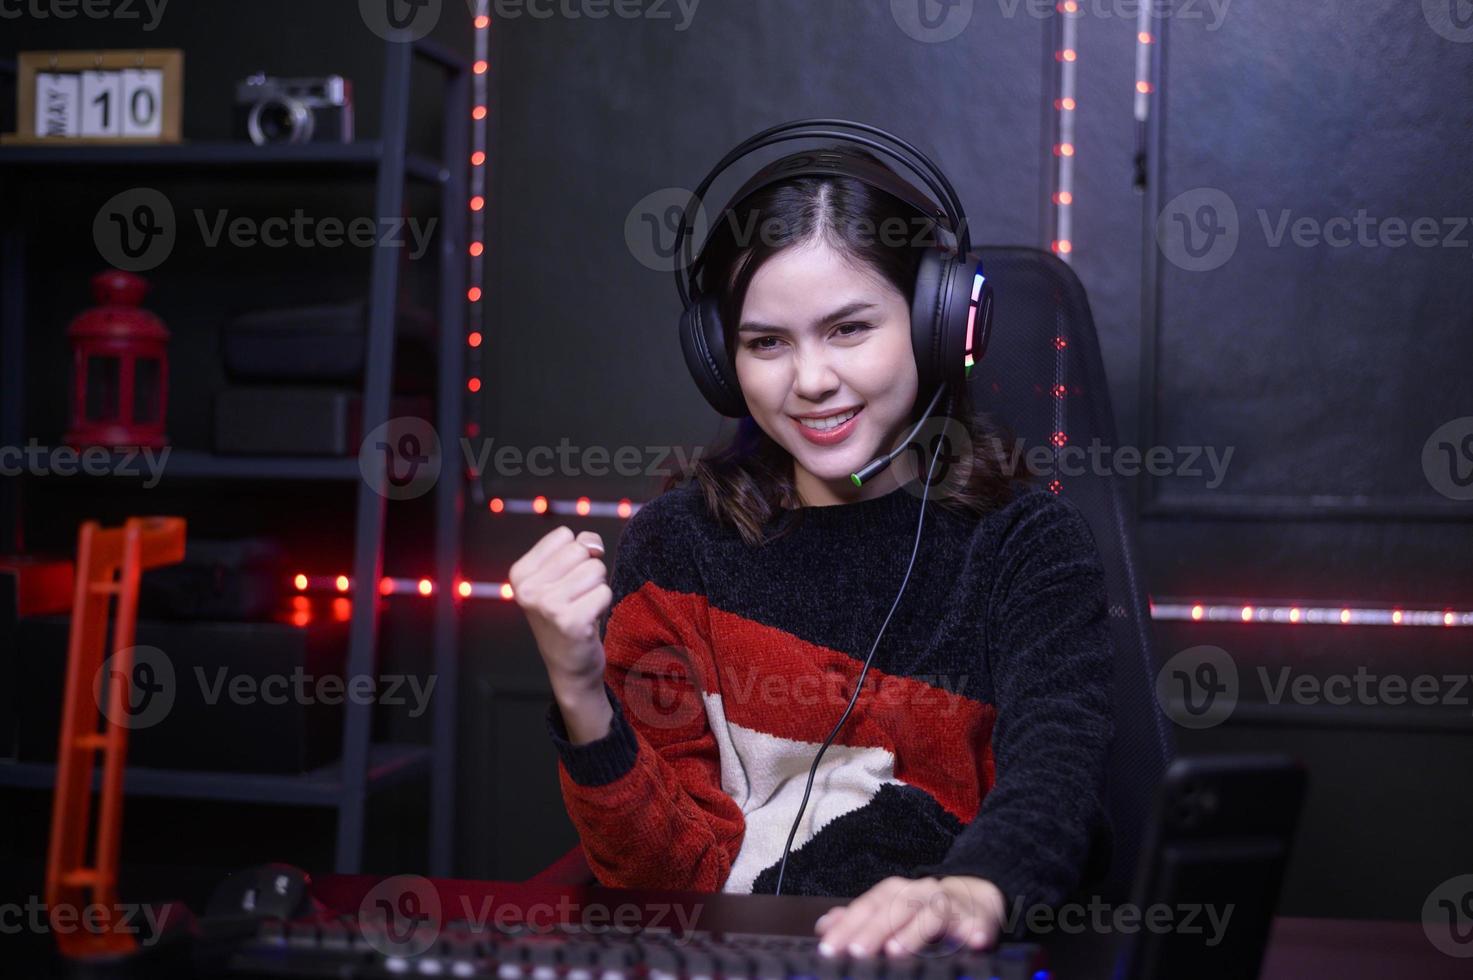 jeune femme streamer professionnelle et gamer avec casque jouant à des jeux vidéo en ligne photo